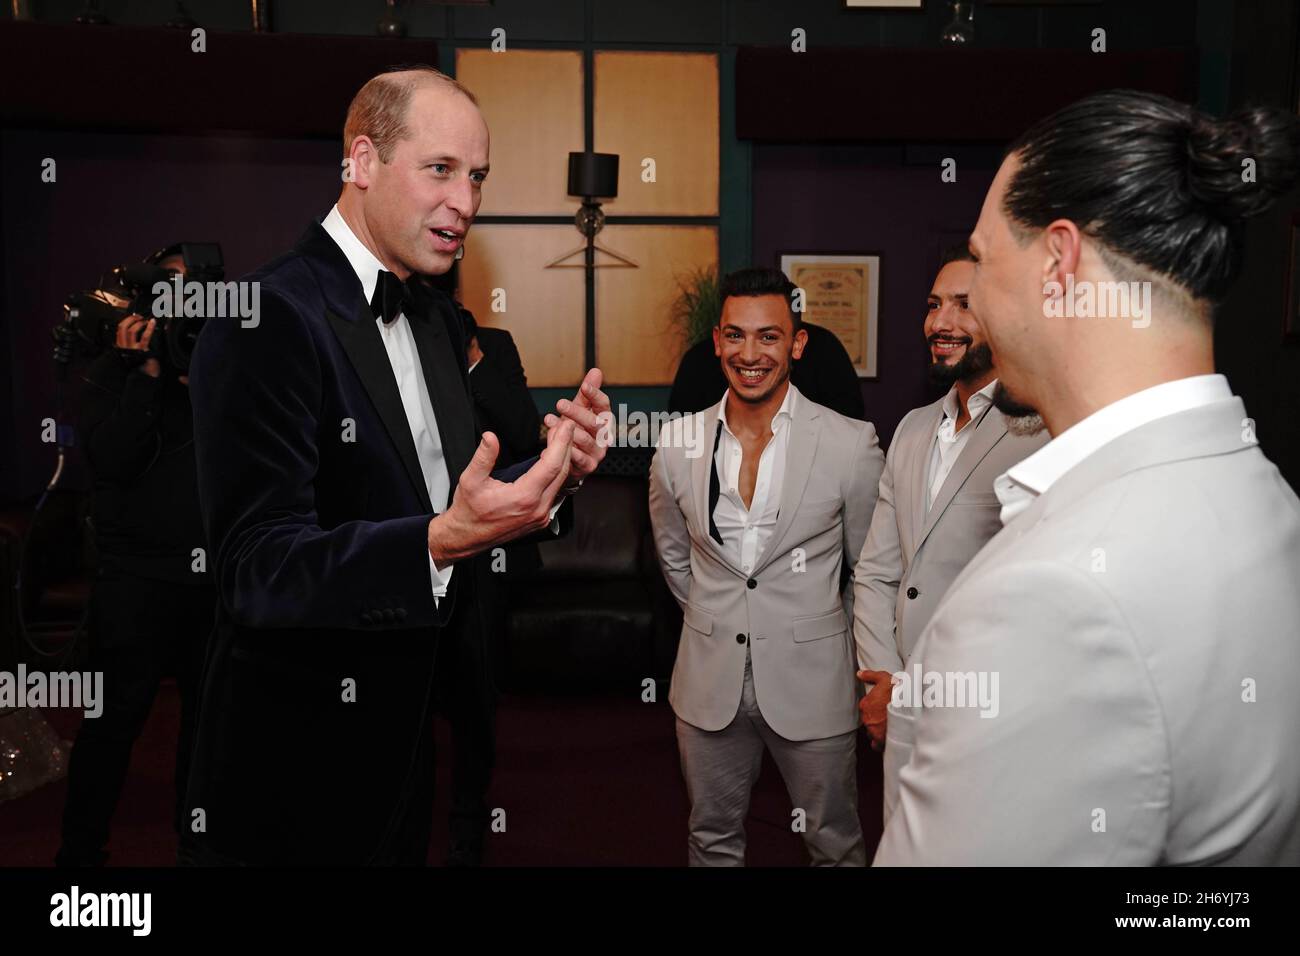 Le duc de Cambridge s'adressant aux frères Messoudi après la Royal Variety Performance au Royal Albert Hall, Londres.Date de la photo: Jeudi 18 novembre 2021. Banque D'Images